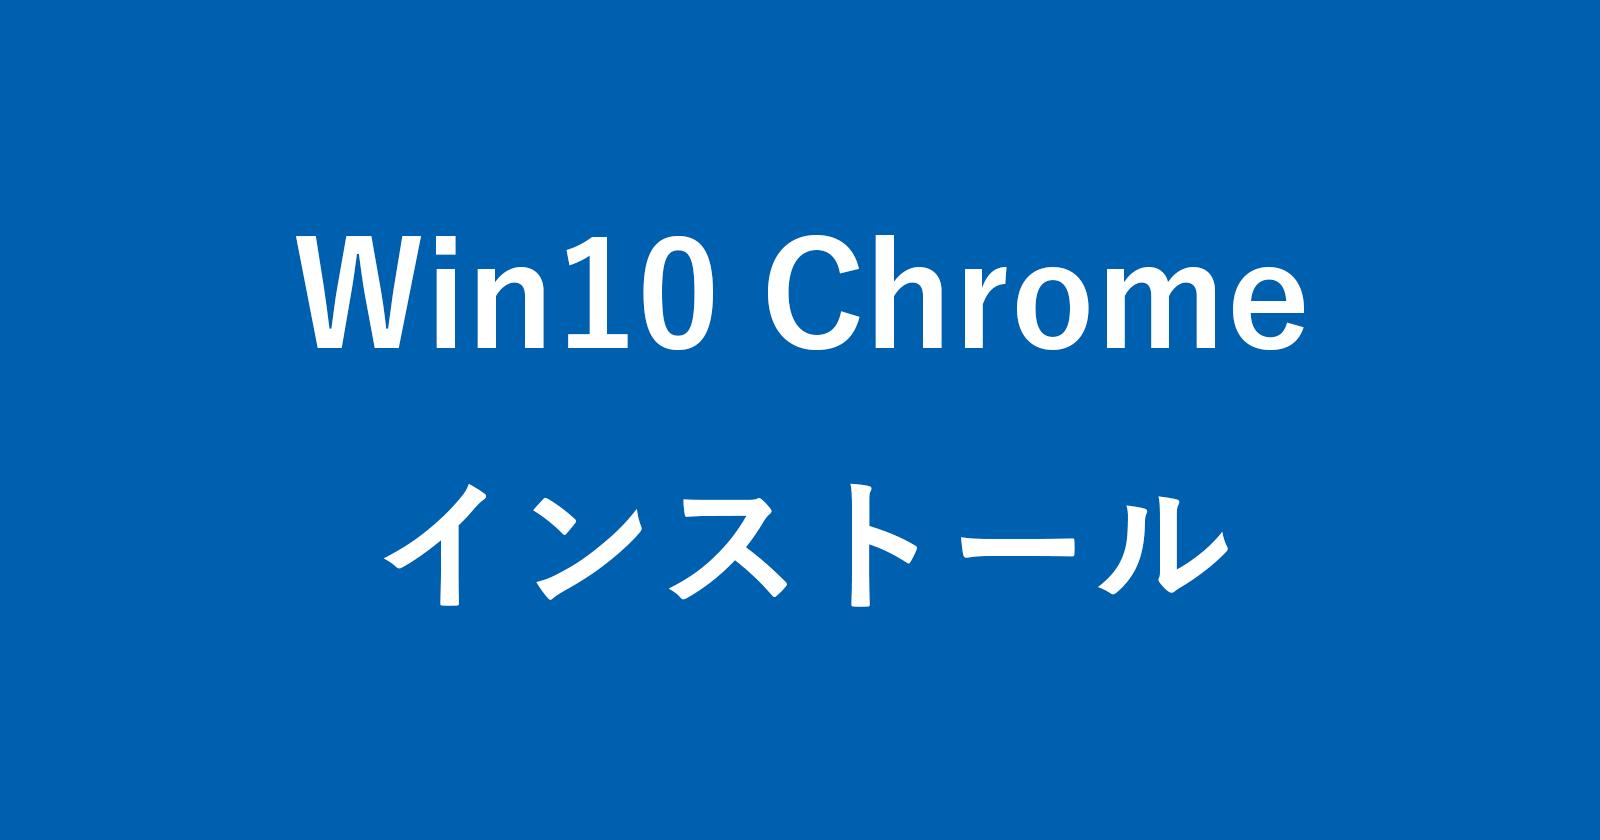 windows 10 chrome install